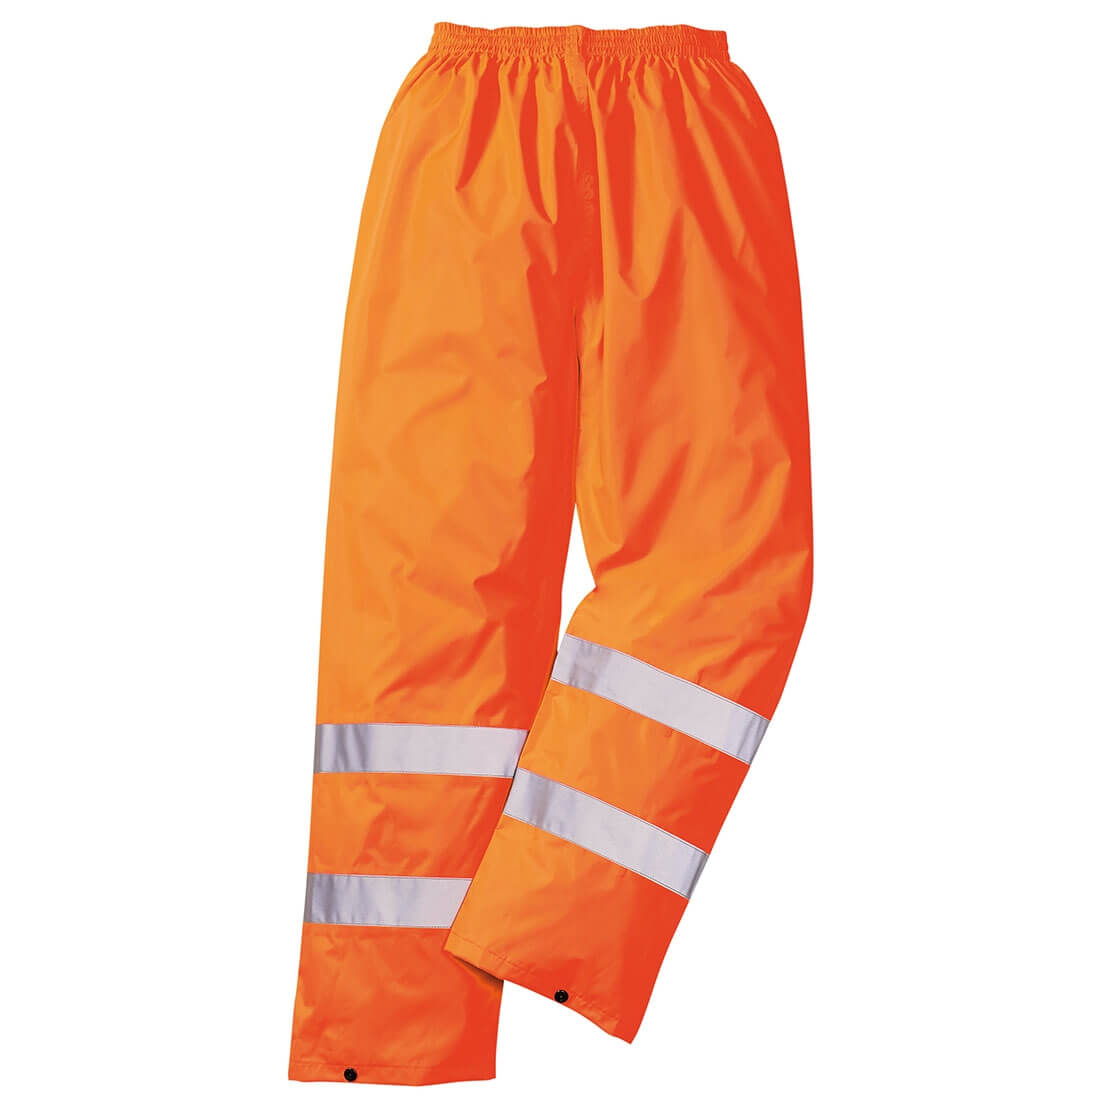 Pantalones de alta visibilidad para lluvia - Ropa de protección